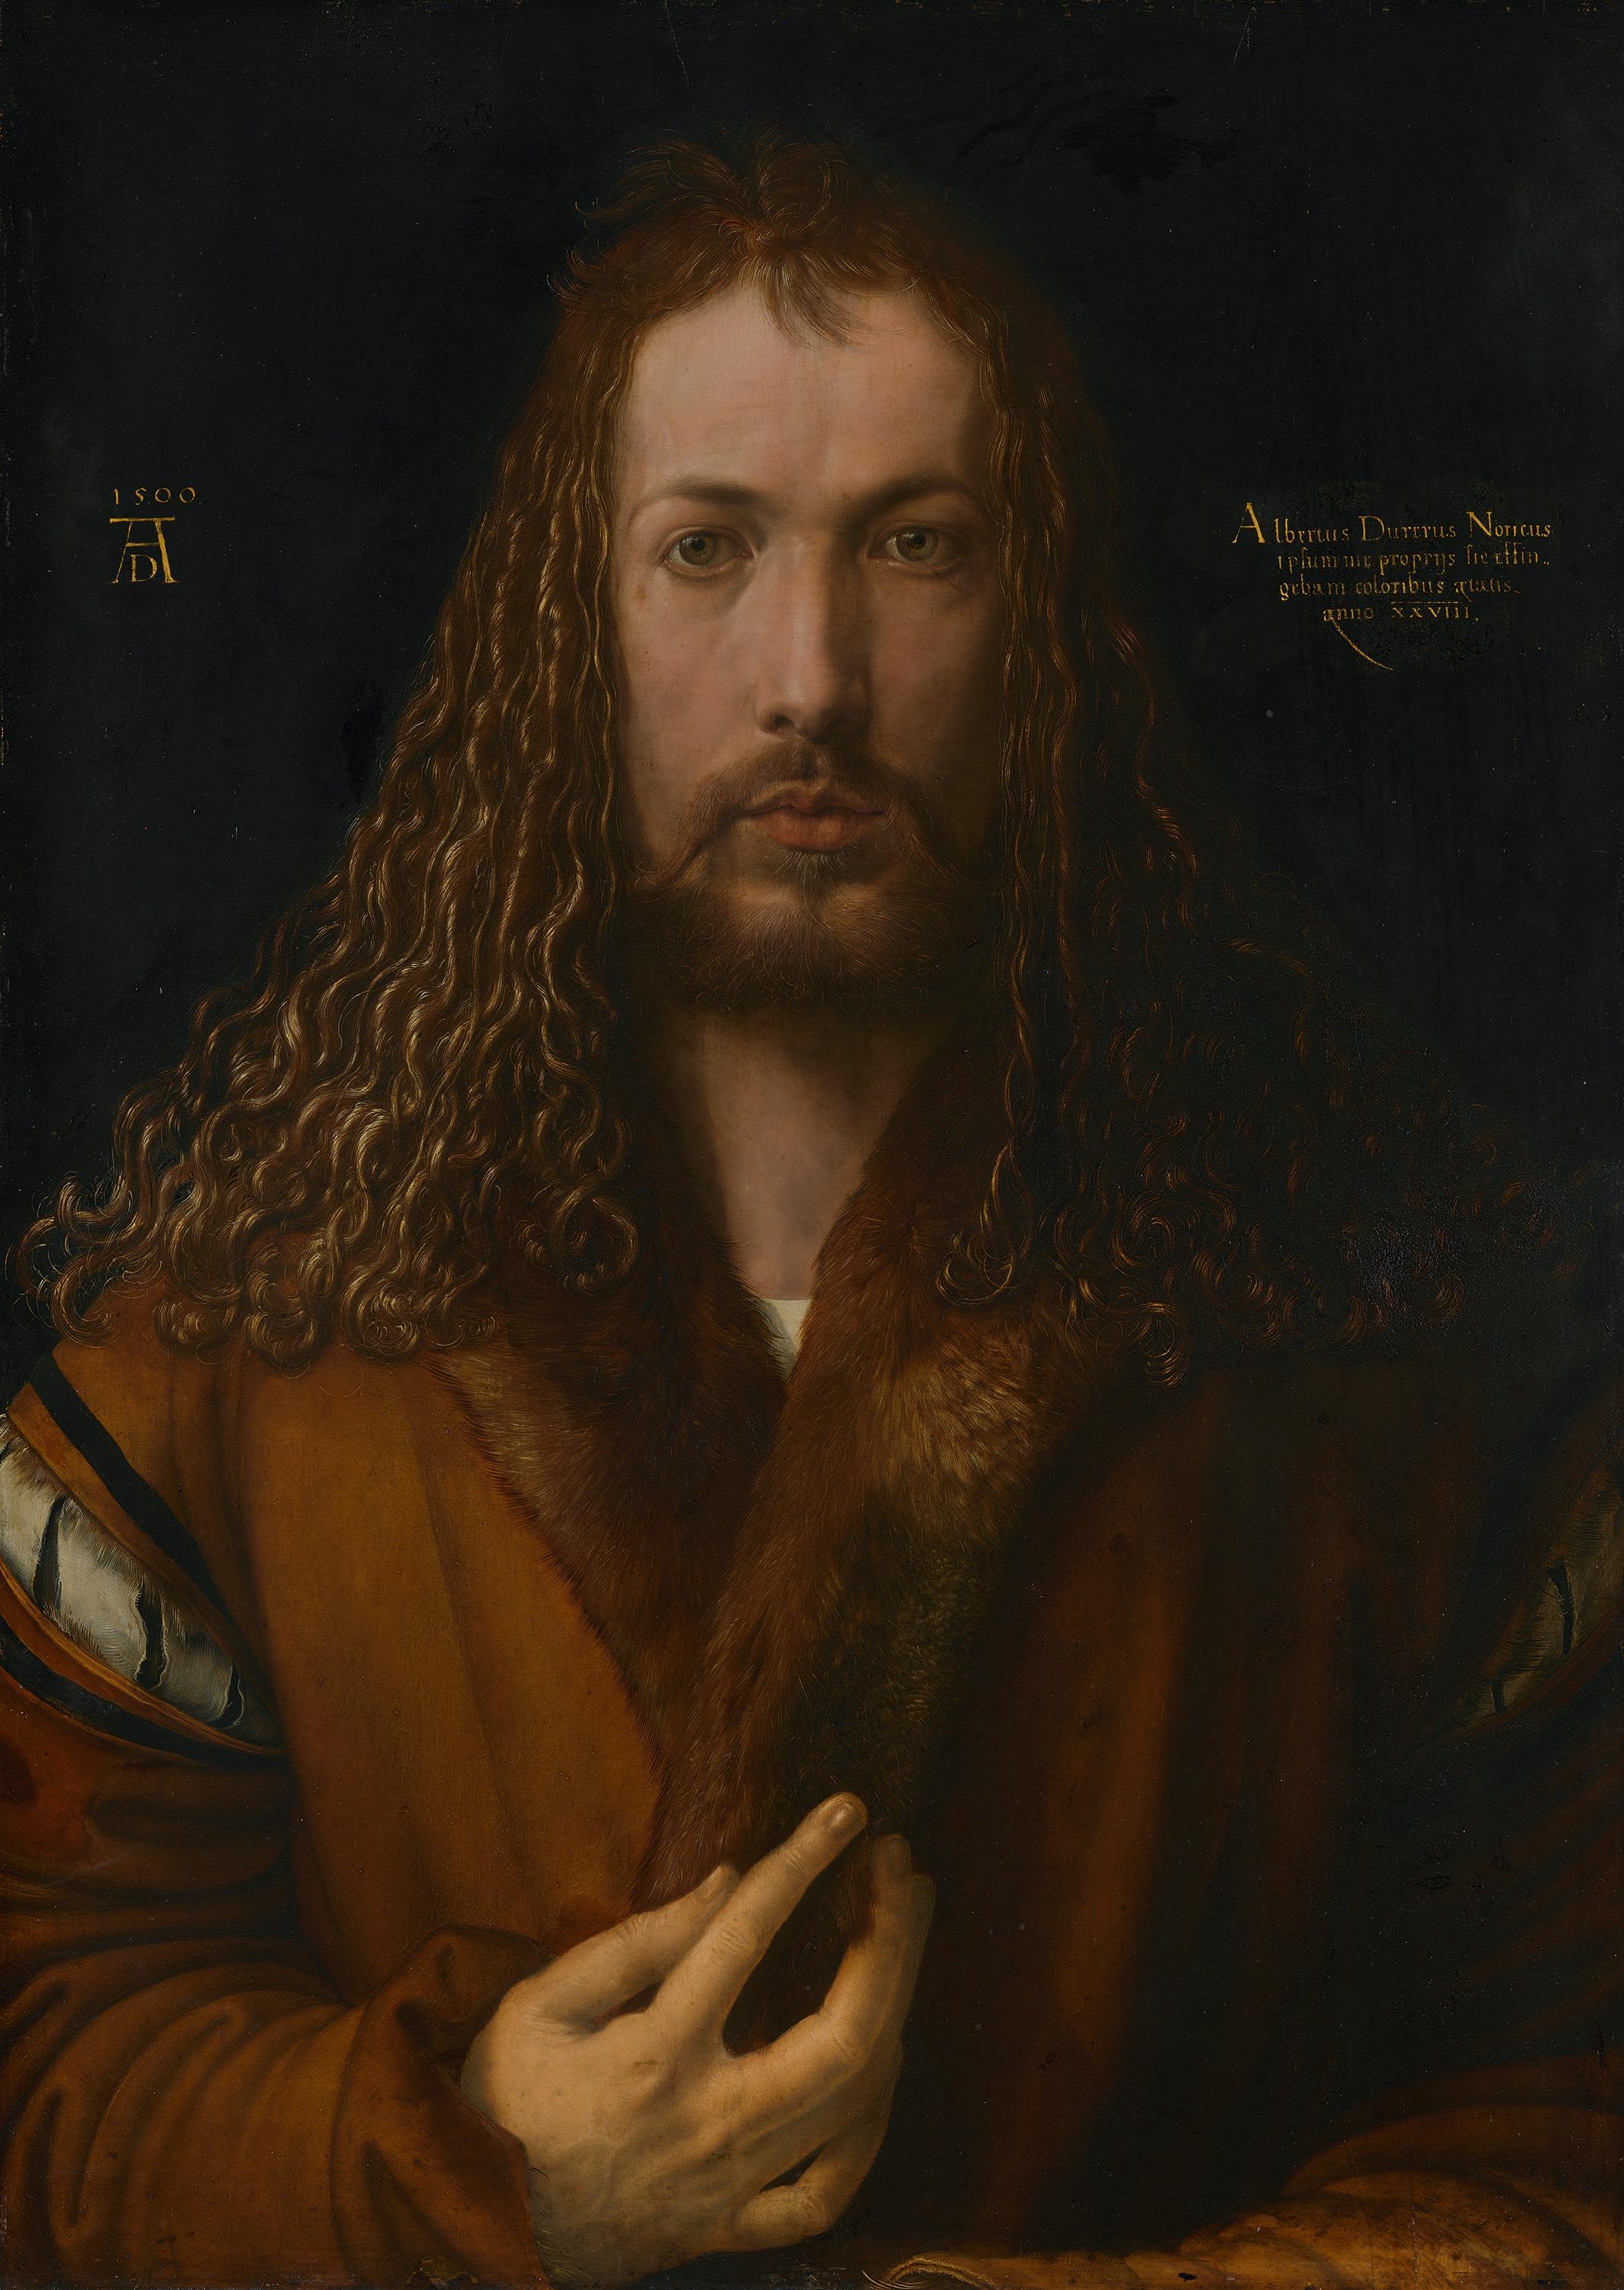 Автопортрет в одежде с меховой отделкой (Self-Portrait with Fur-Trimmed Robe) by Альбрехт Дюрер - 1500 - 67,1 x 48,9 см 